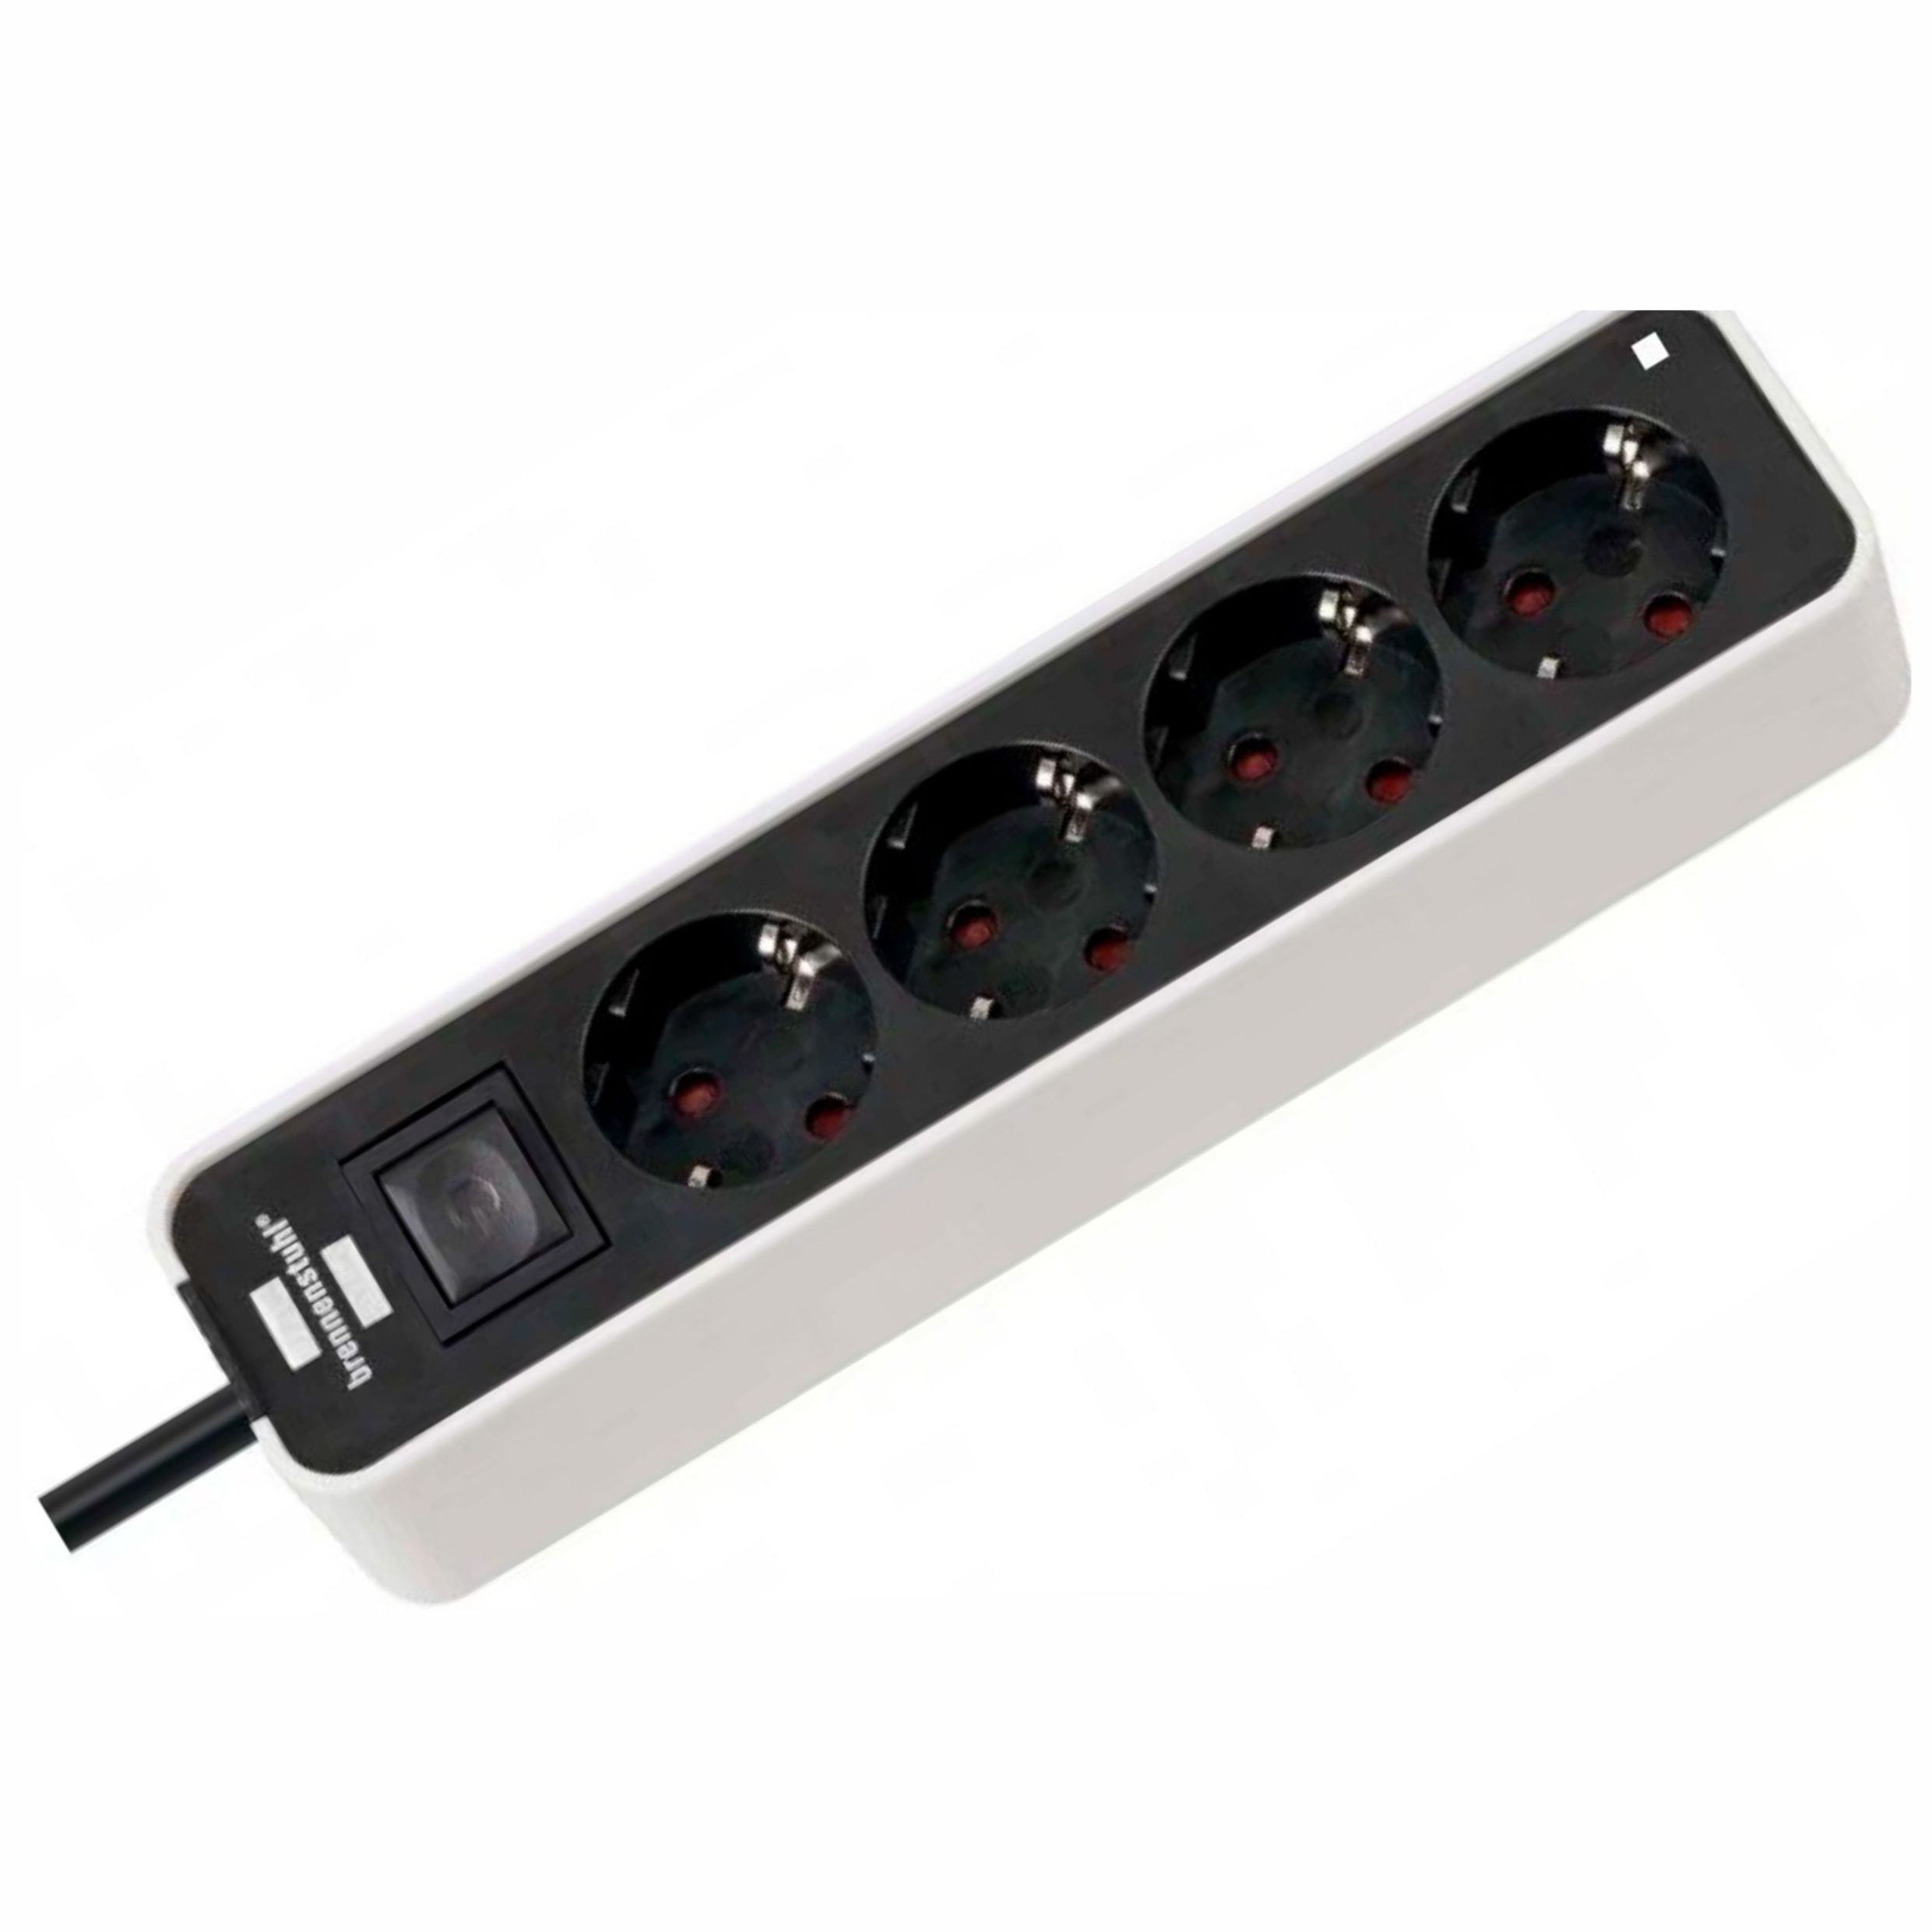 купить Удлинитель Ecolor с переключателем 4 розетки; 1.5 метра; 2 USB для зарядки,черно-белый